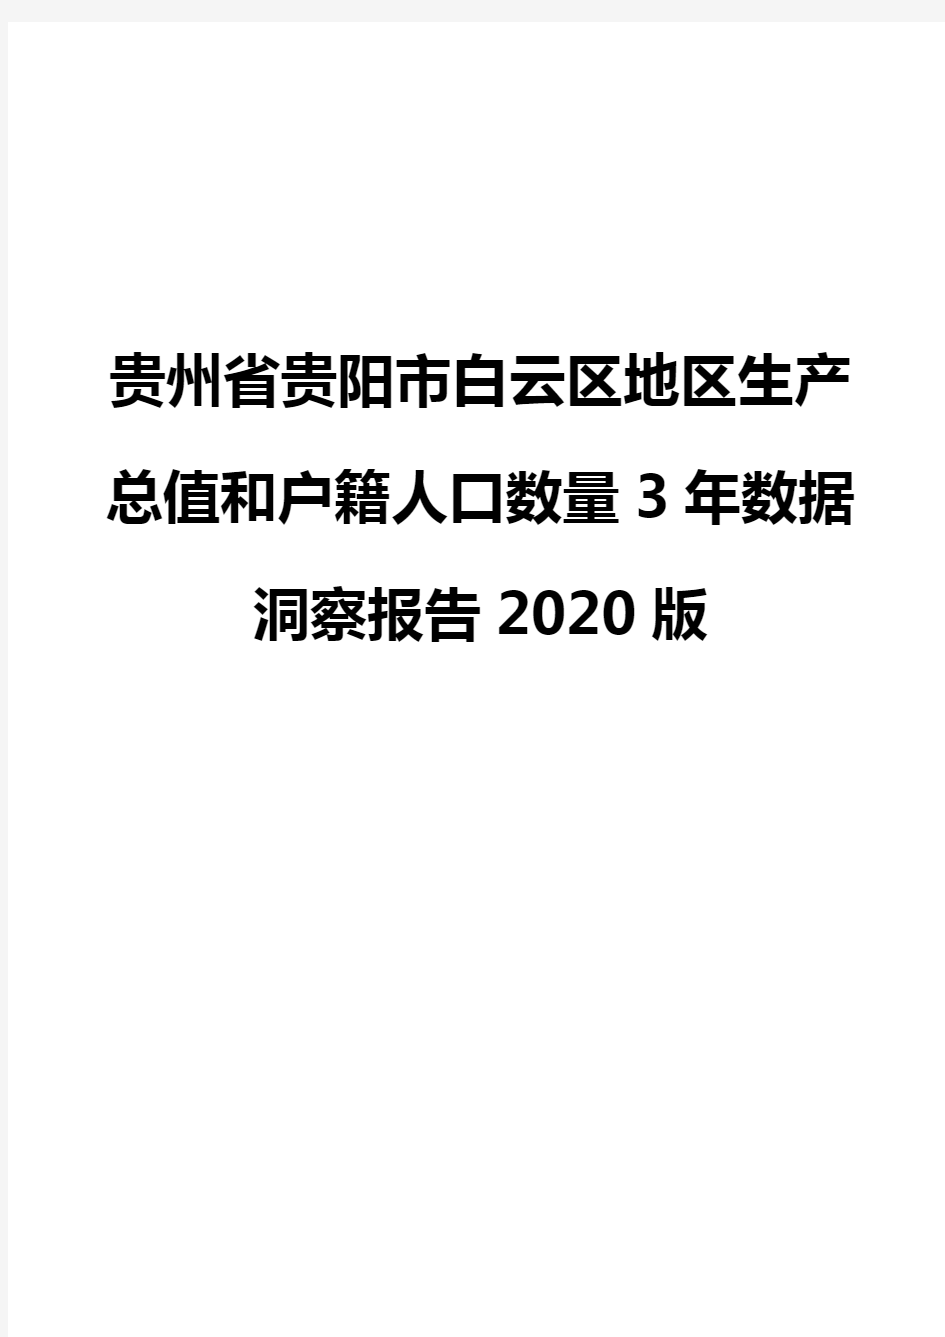 贵州省贵阳市白云区地区生产总值和户籍人口数量3年数据洞察报告2020版